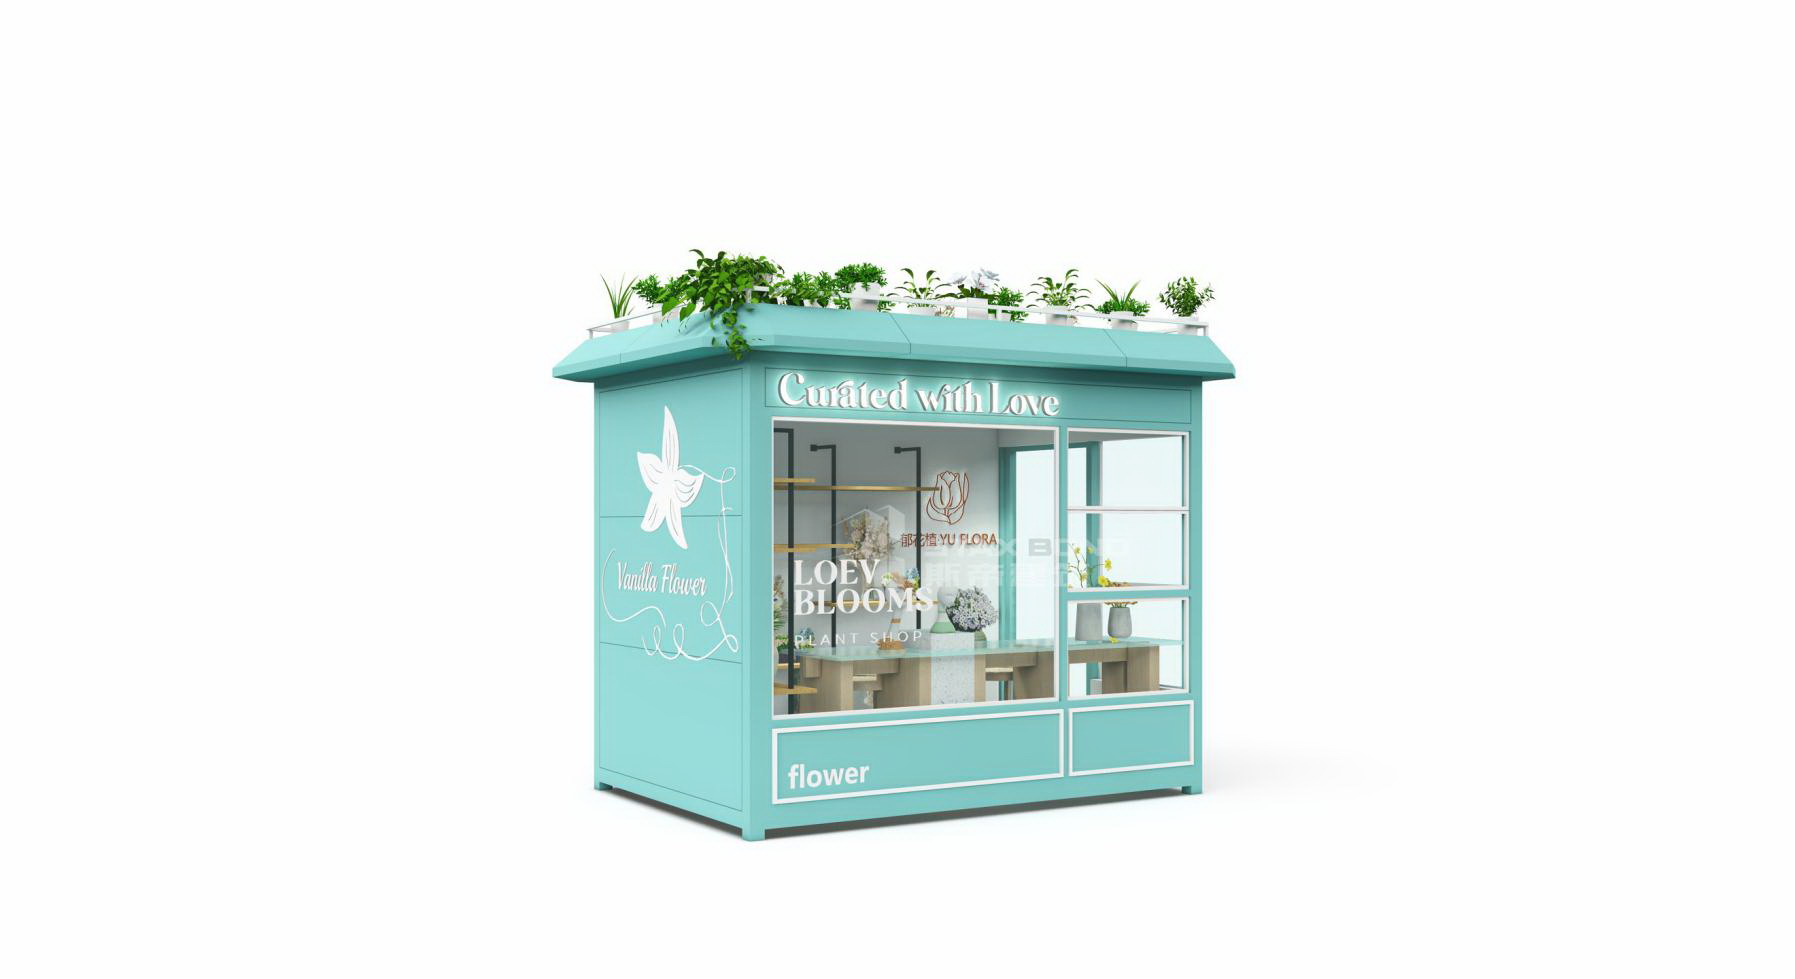 模块化集装箱建筑mini · 小型鲜花店